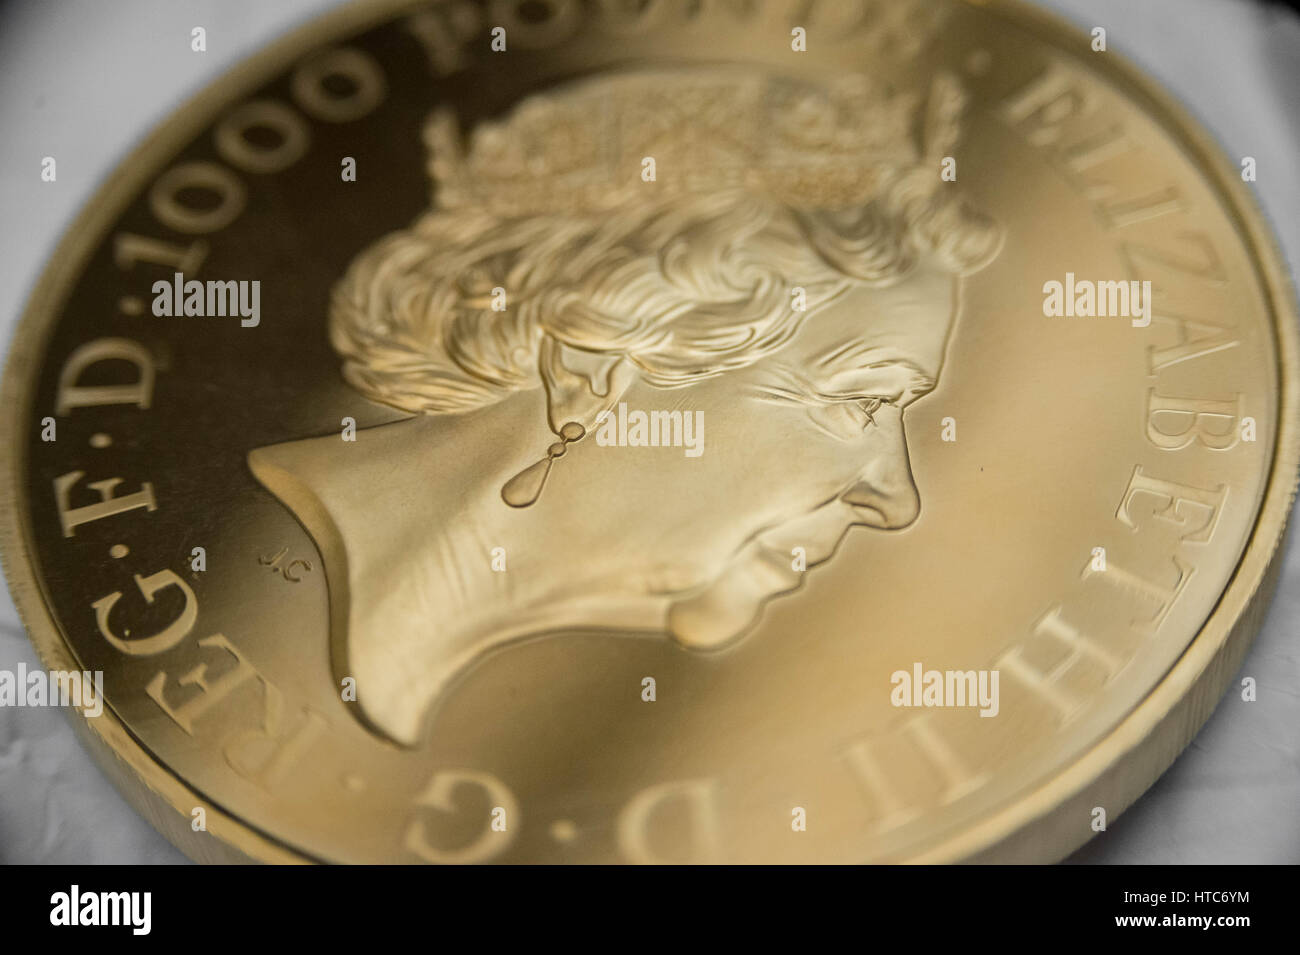 Así como la norma de monedas, la Oficina también pruebas de ensayo de Londres monedas conmemorativas. Fotografiados aquí un oro puro 999 Prueba de moneda soberana. Foto de stock